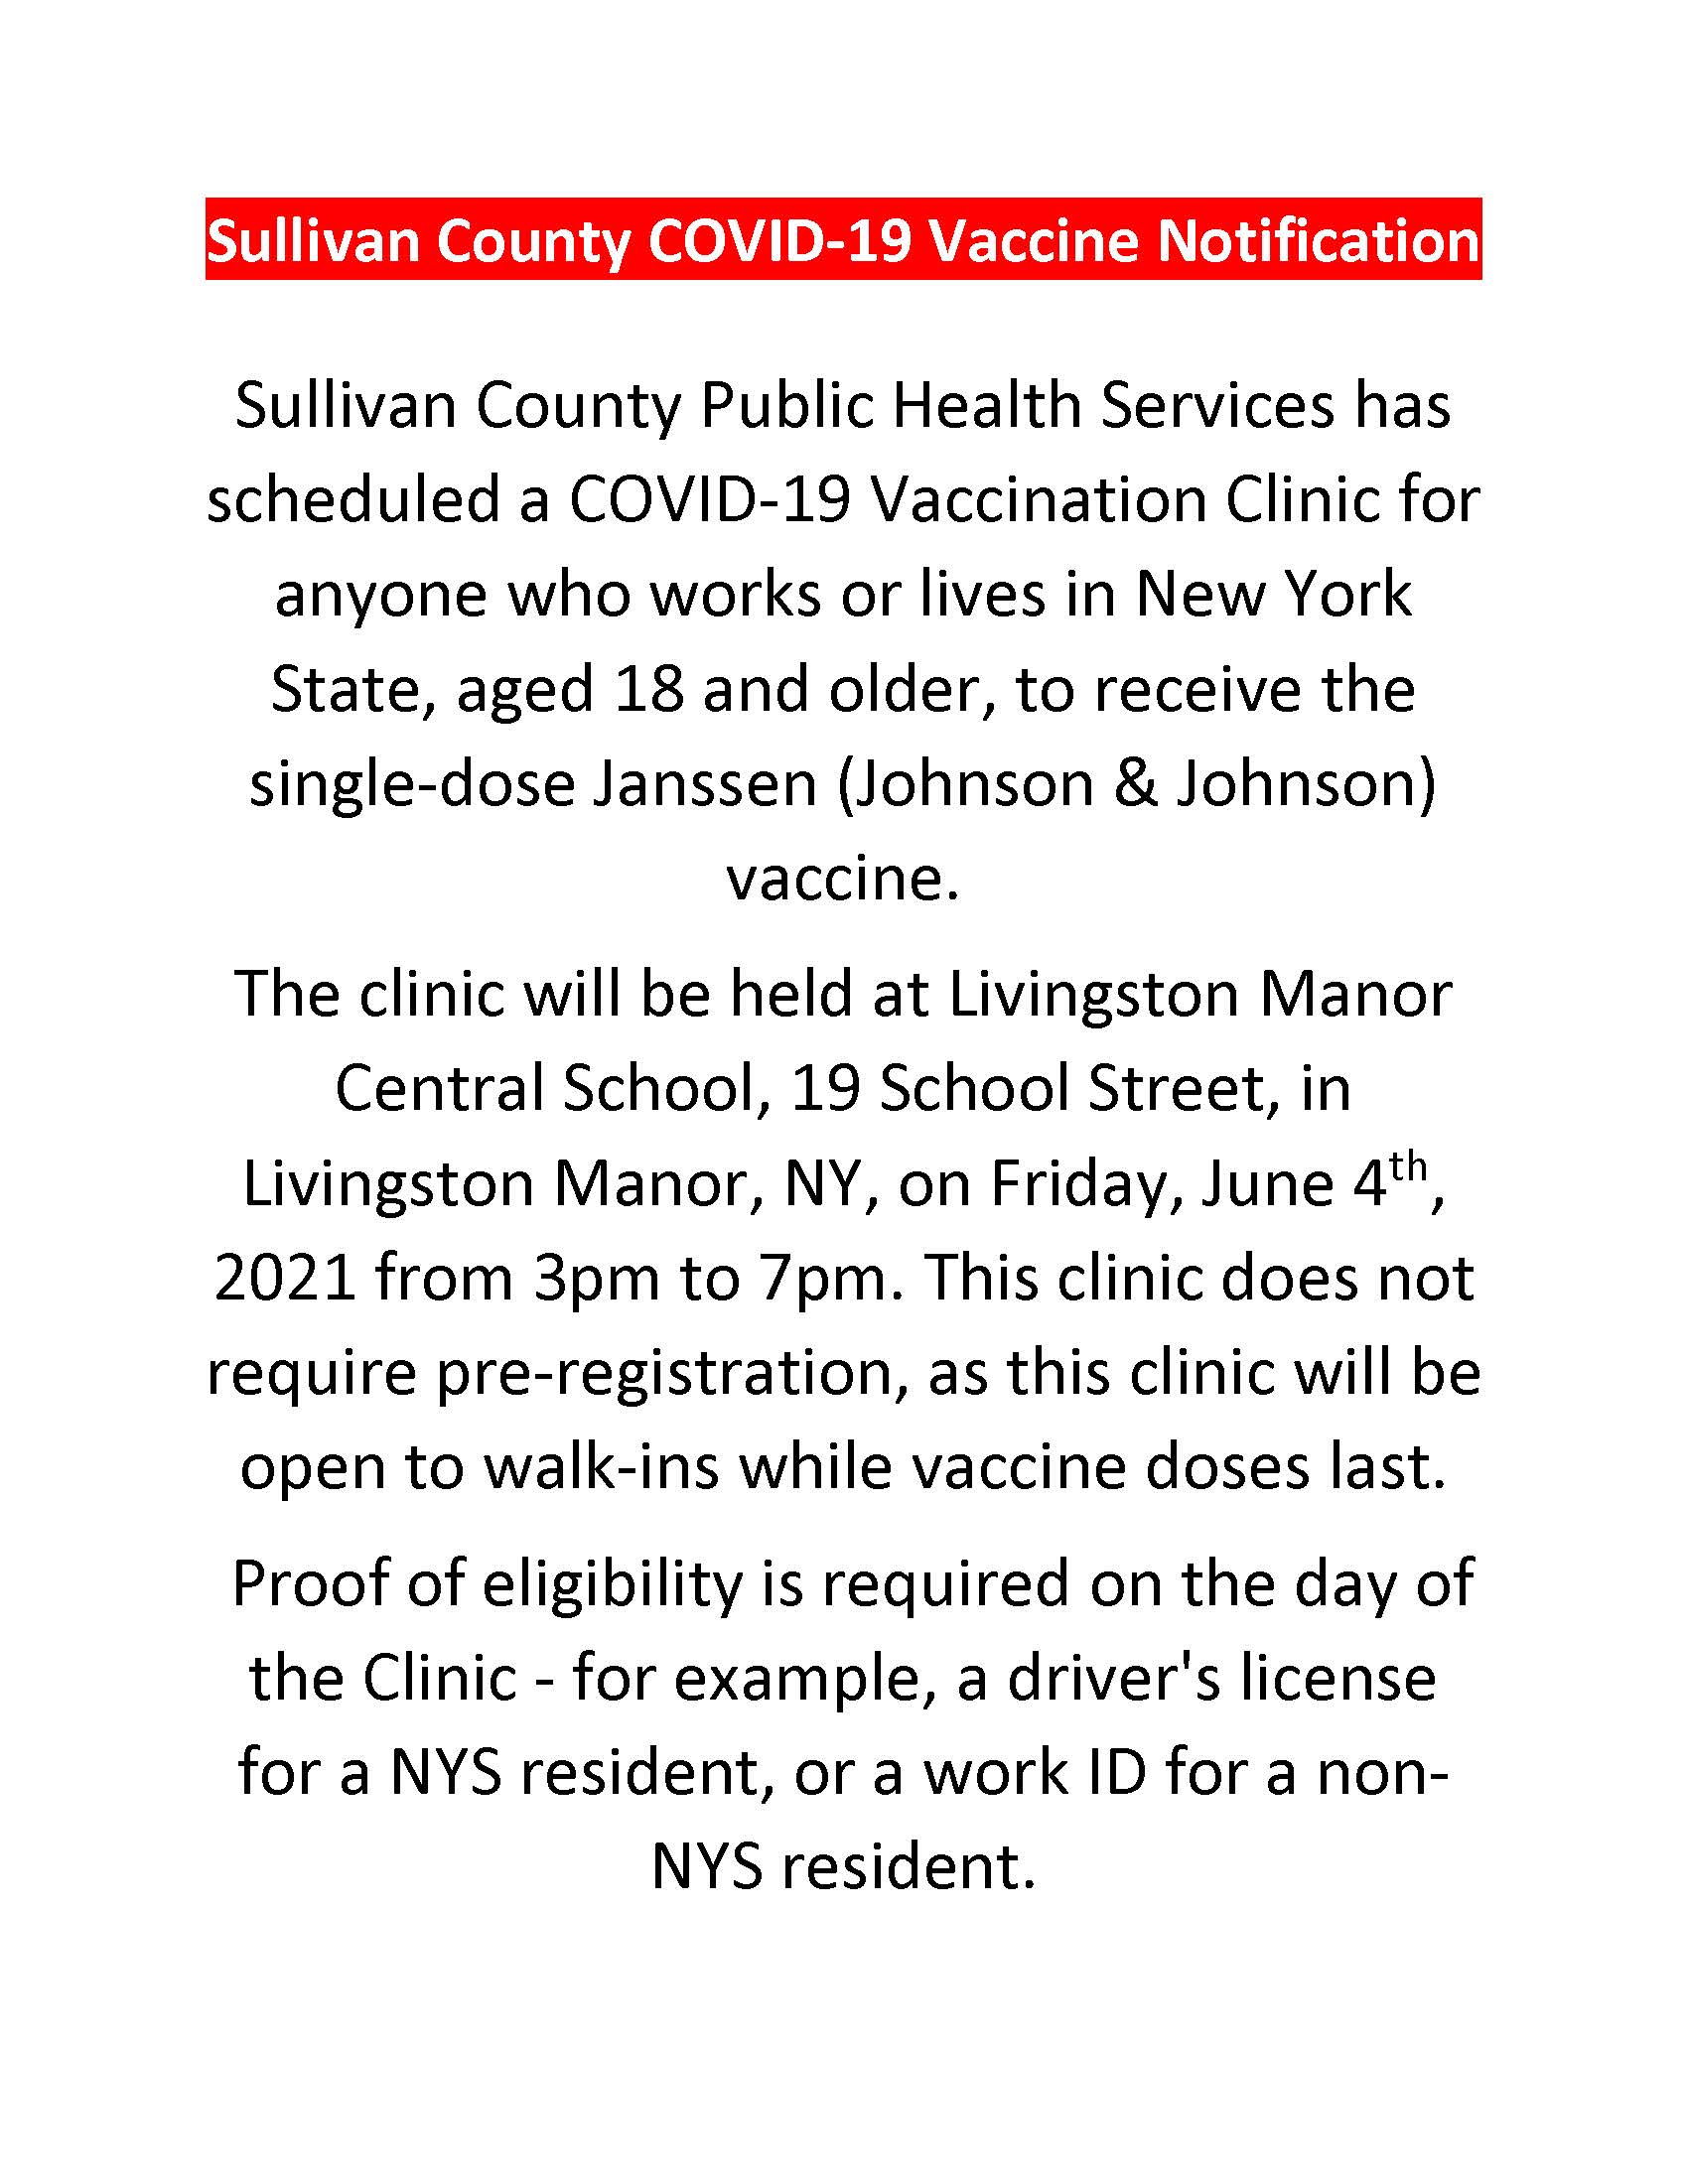 Sullivan County COVID Vaccine Livingston Manor 2